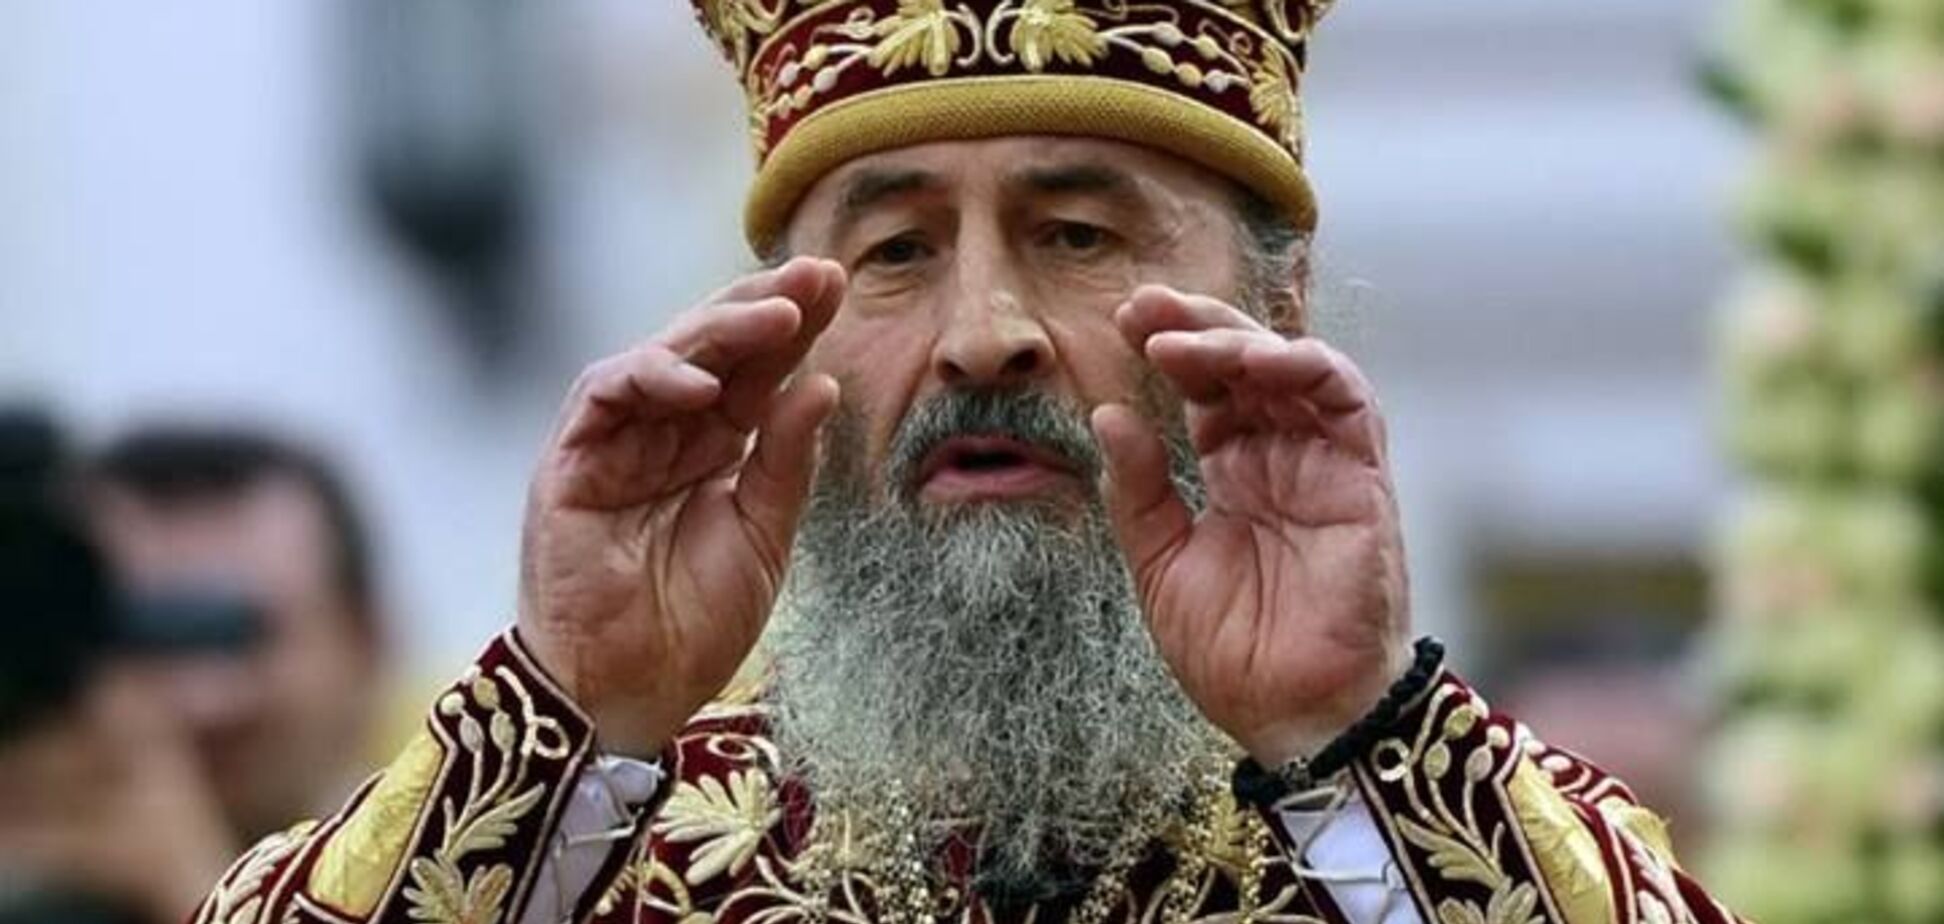 'Комедия!' Онуфрий едко высказался о Православной церкви Украины